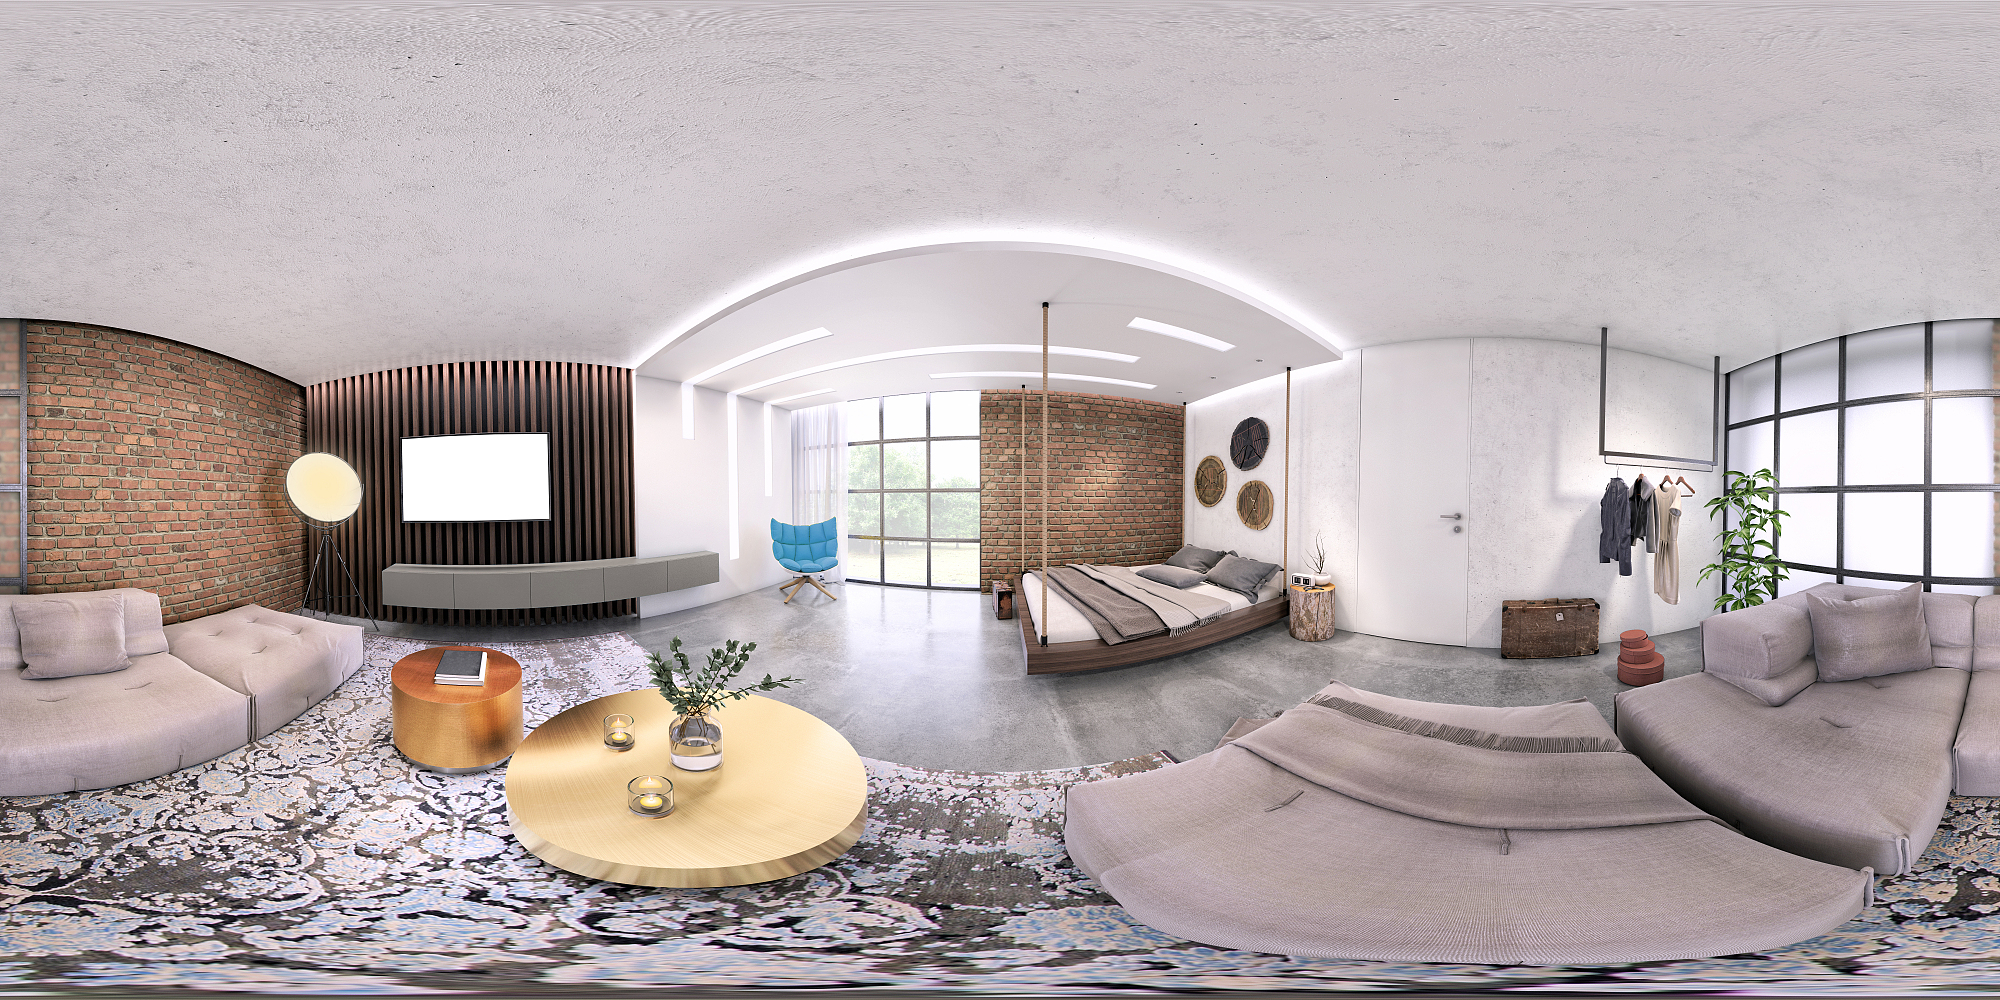 现代工作室公寓360等矩形全景室内图片下载